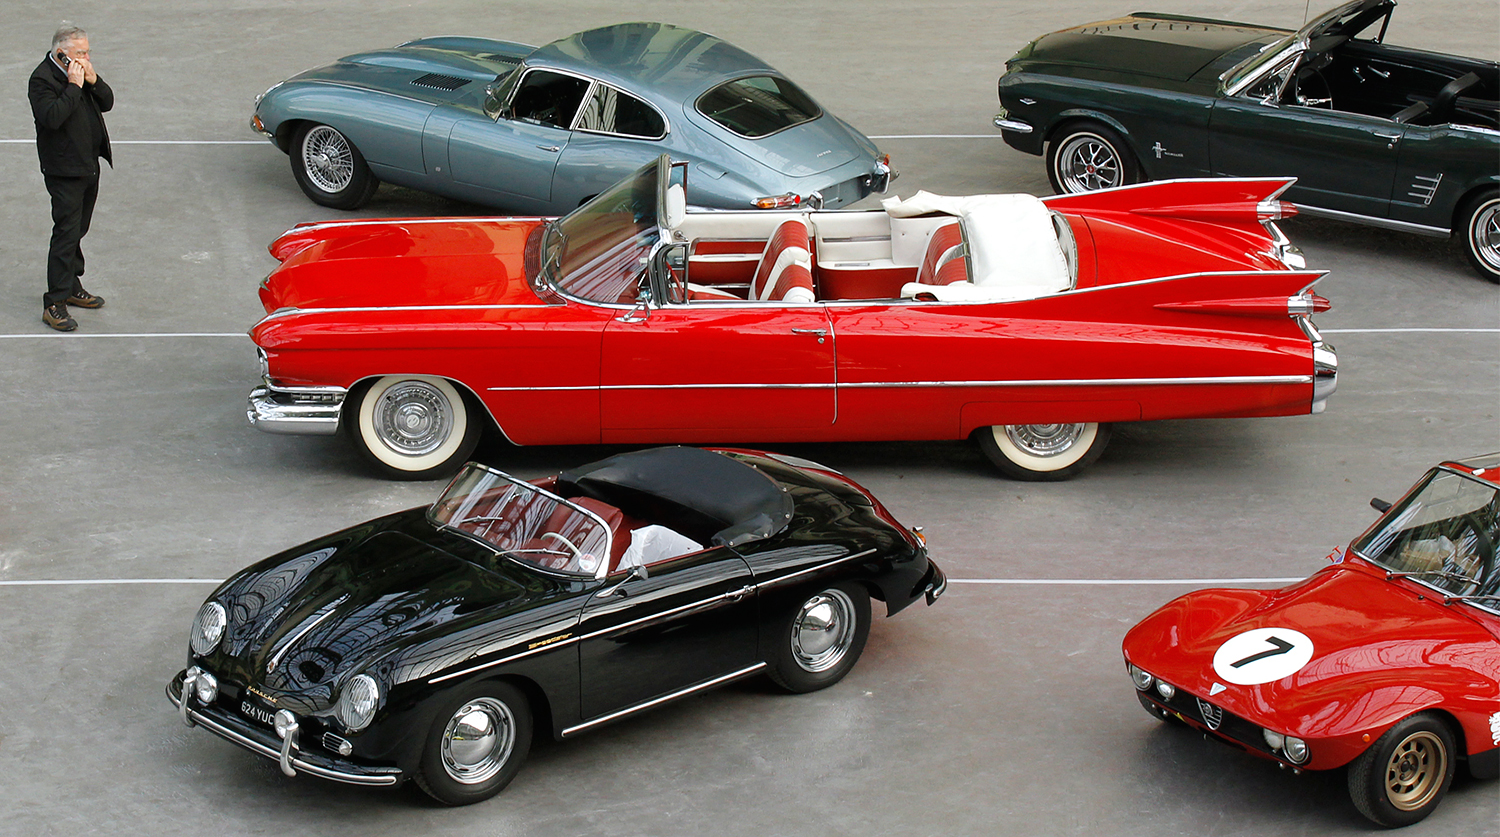 Кабриолет Cadillac Series 62 1959 года рядом со спорткарами Porsche и Jaguar и пони-каром Ford Mustang